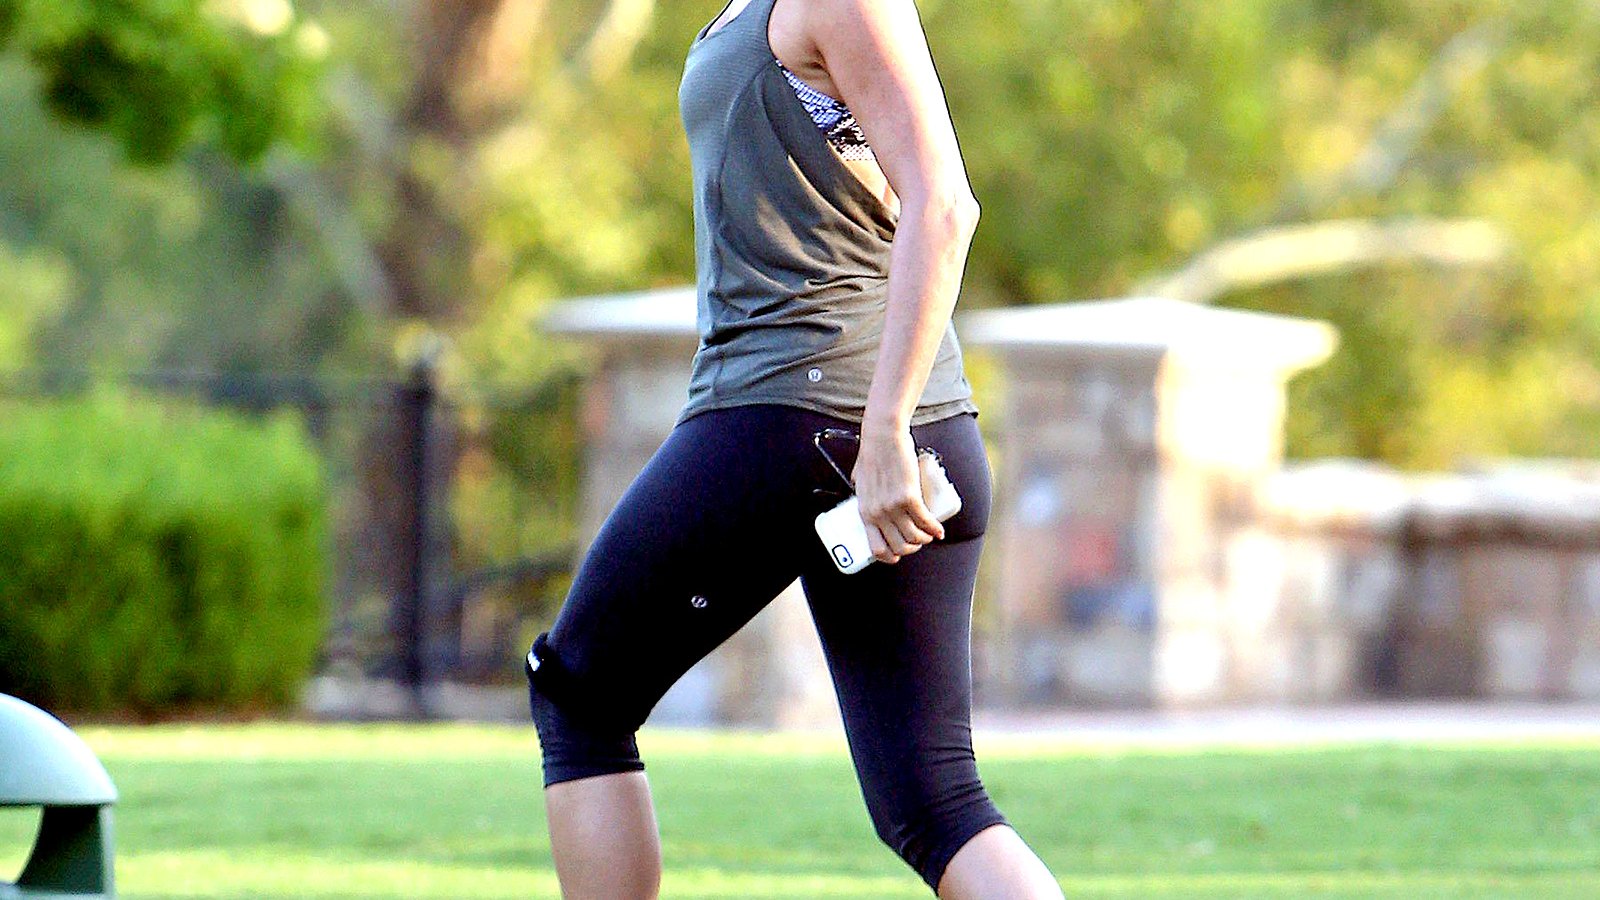 Jennifer Aniston smiles, wears workout clothes on set in Georgia.